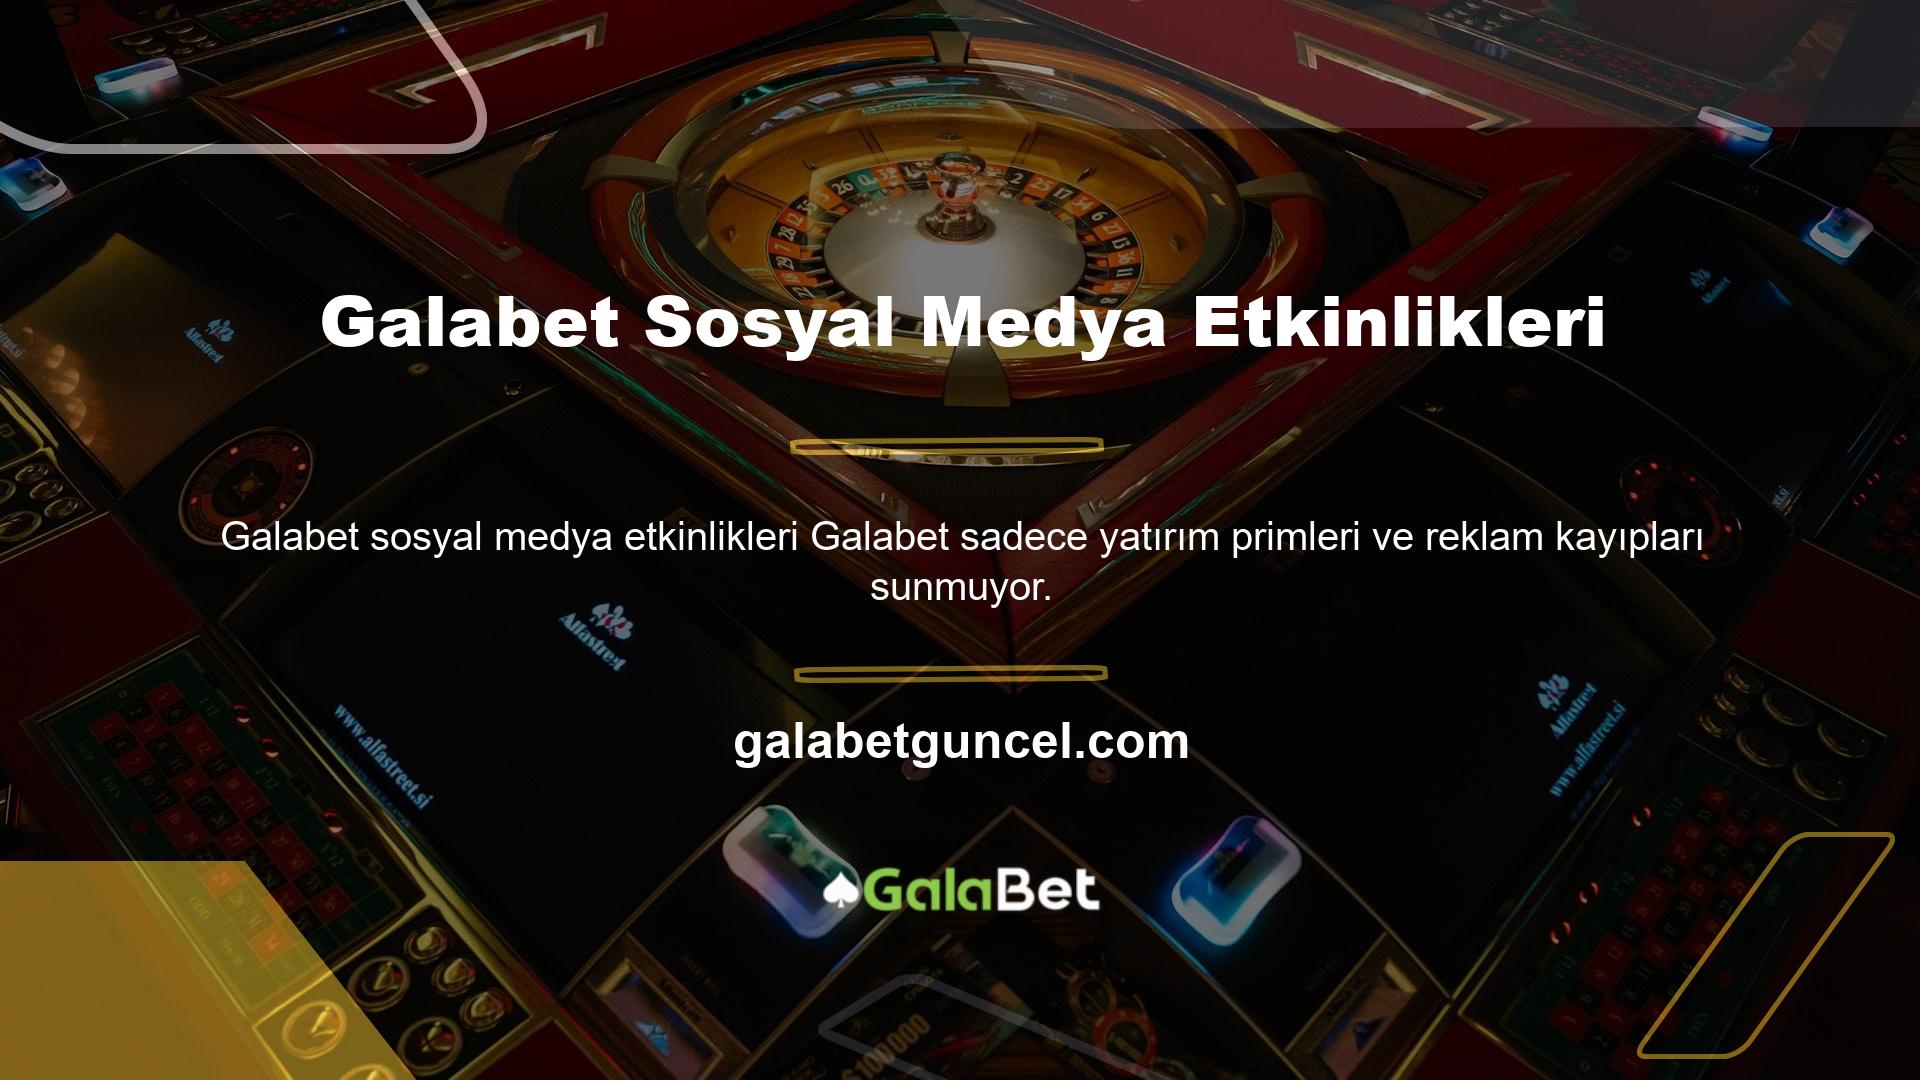 Birçok sosyal medya etkinliğine ev sahipliği yapan Galabet resmi hesabını takip ederek ödüller kazanın